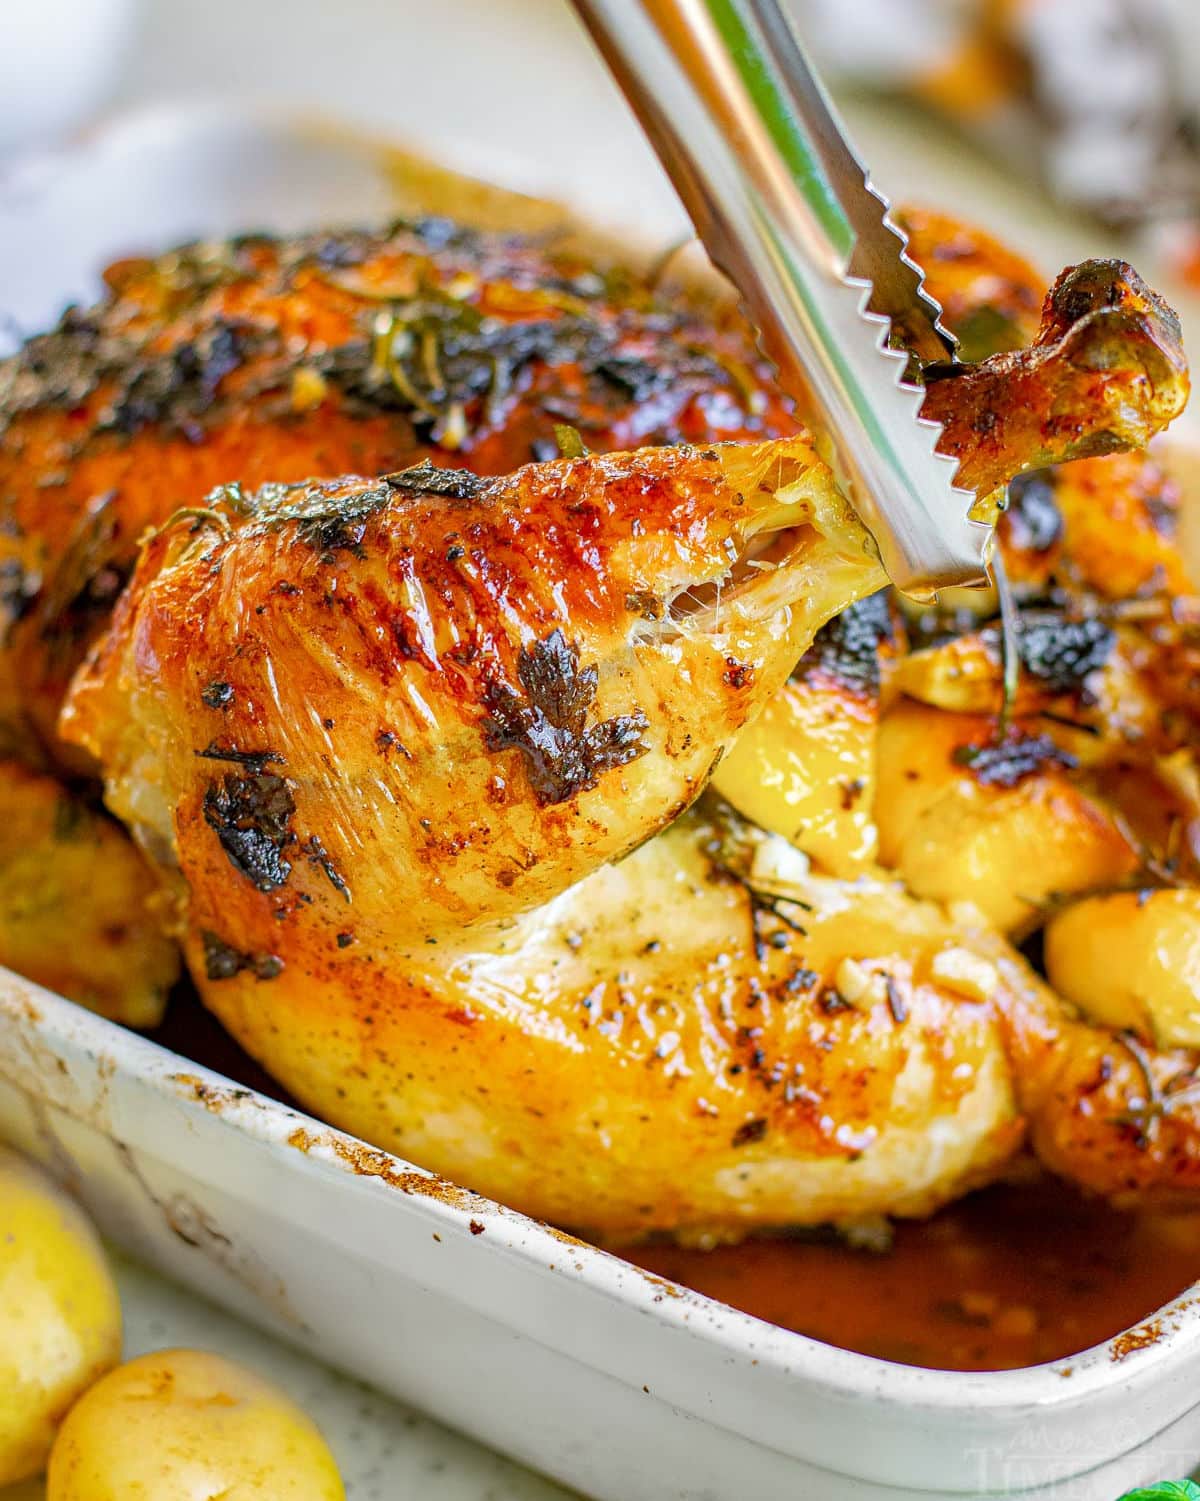 Roast Chicken with Garlic & Herb Seasoning - Kinders